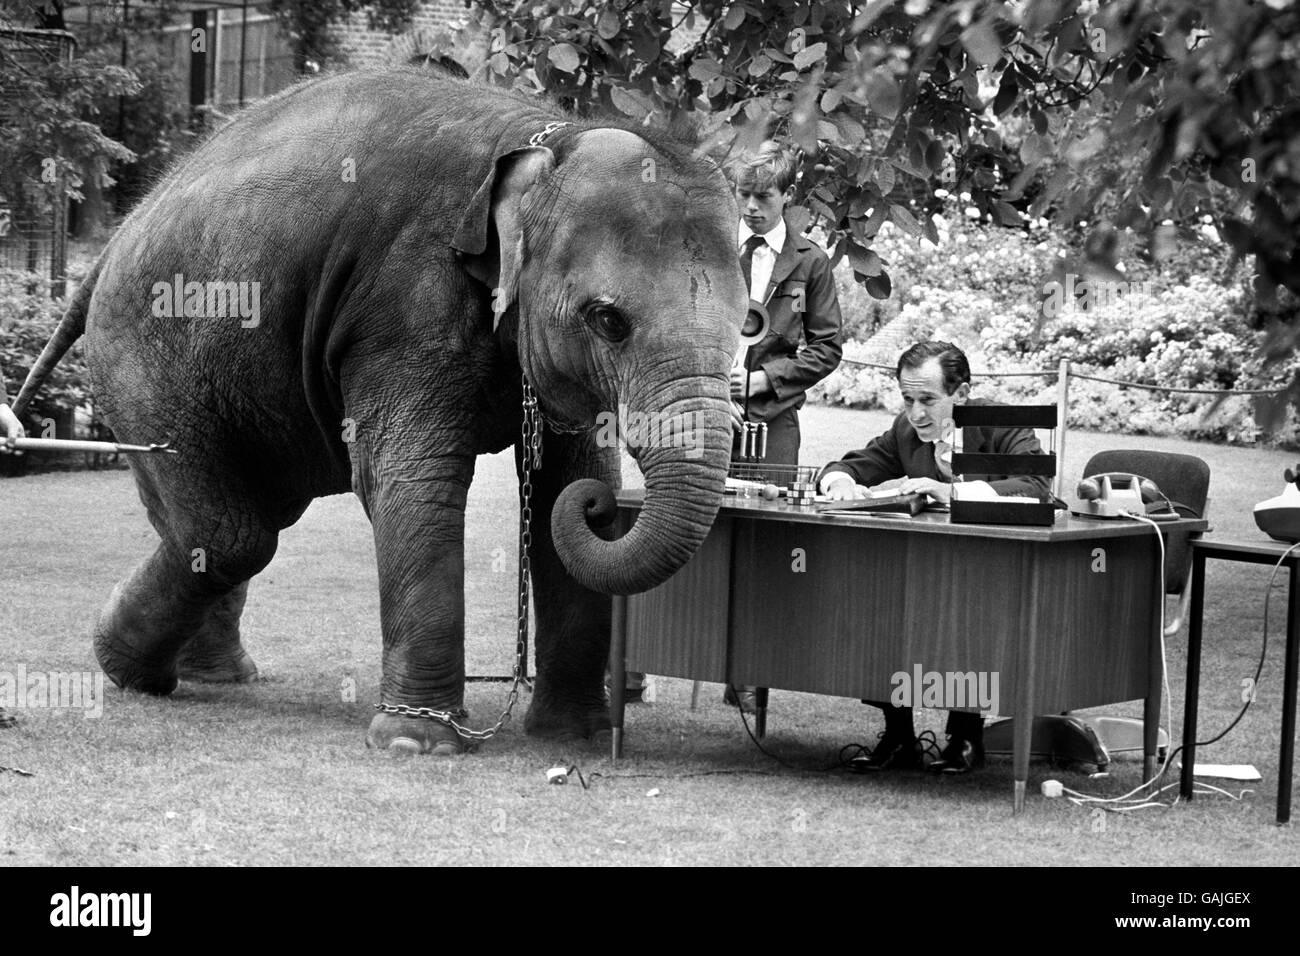 L'artista spagnolo mime Alberto Vidal riceve una visita da uno dei suoi nuovi amici allo Zoo di Londra. Il signor Vidal diventerà una delle mostre dello zoo quando ritrarre le abitudini quotidiane dell'uomo urbano. Foto Stock